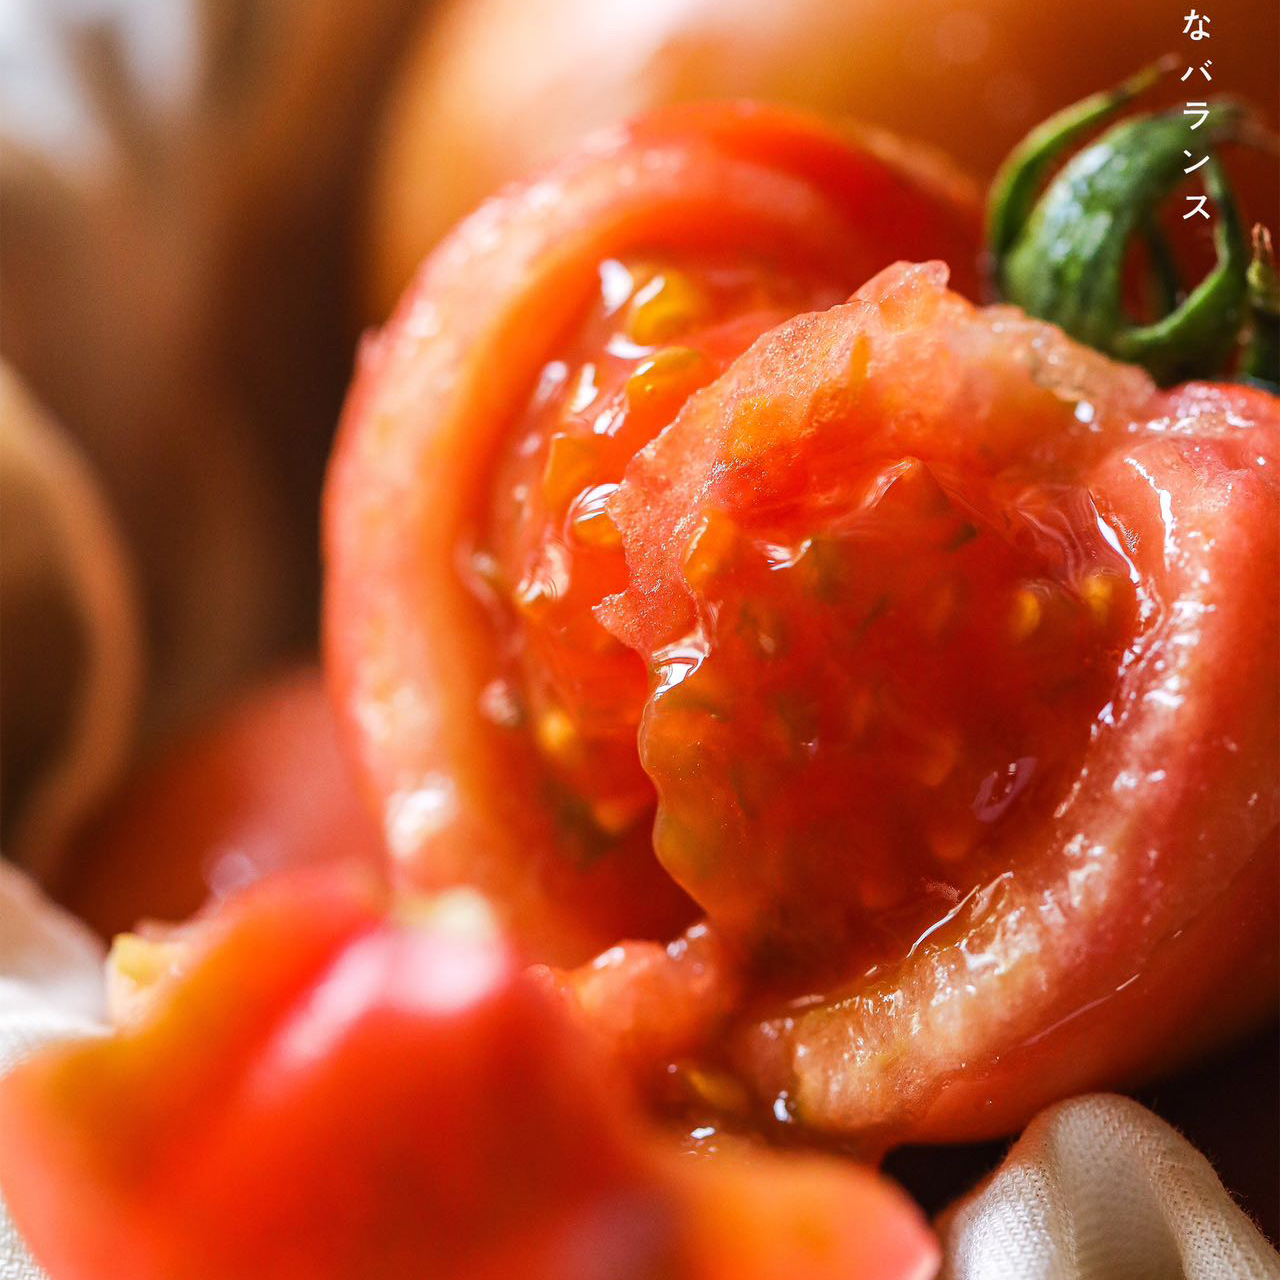 大小不一有疤痕吉藤高糖番茄西红柿有机种植小时候也吃不到的浓郁